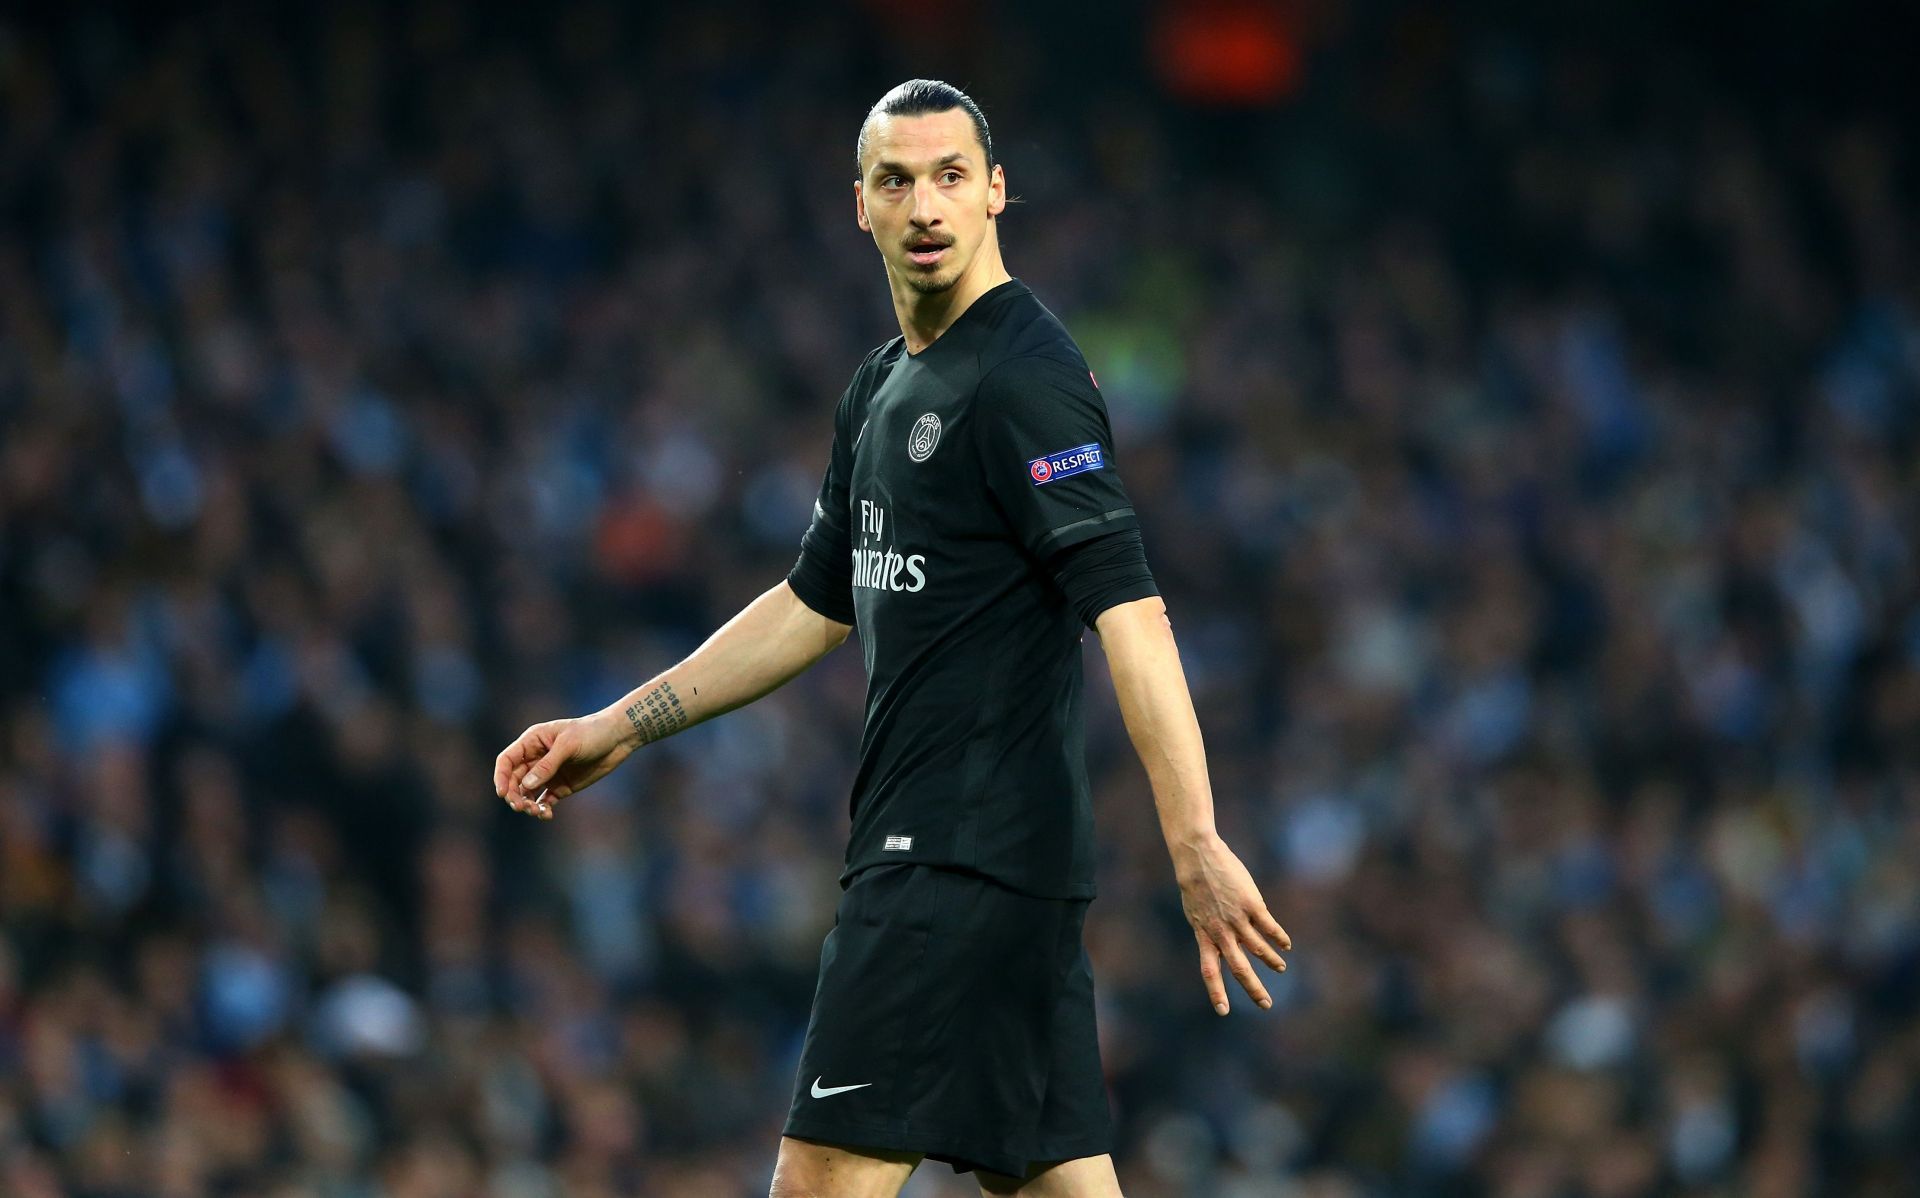 Zlatan scored 10 goals in the 2013-14 UEFA Champions League season